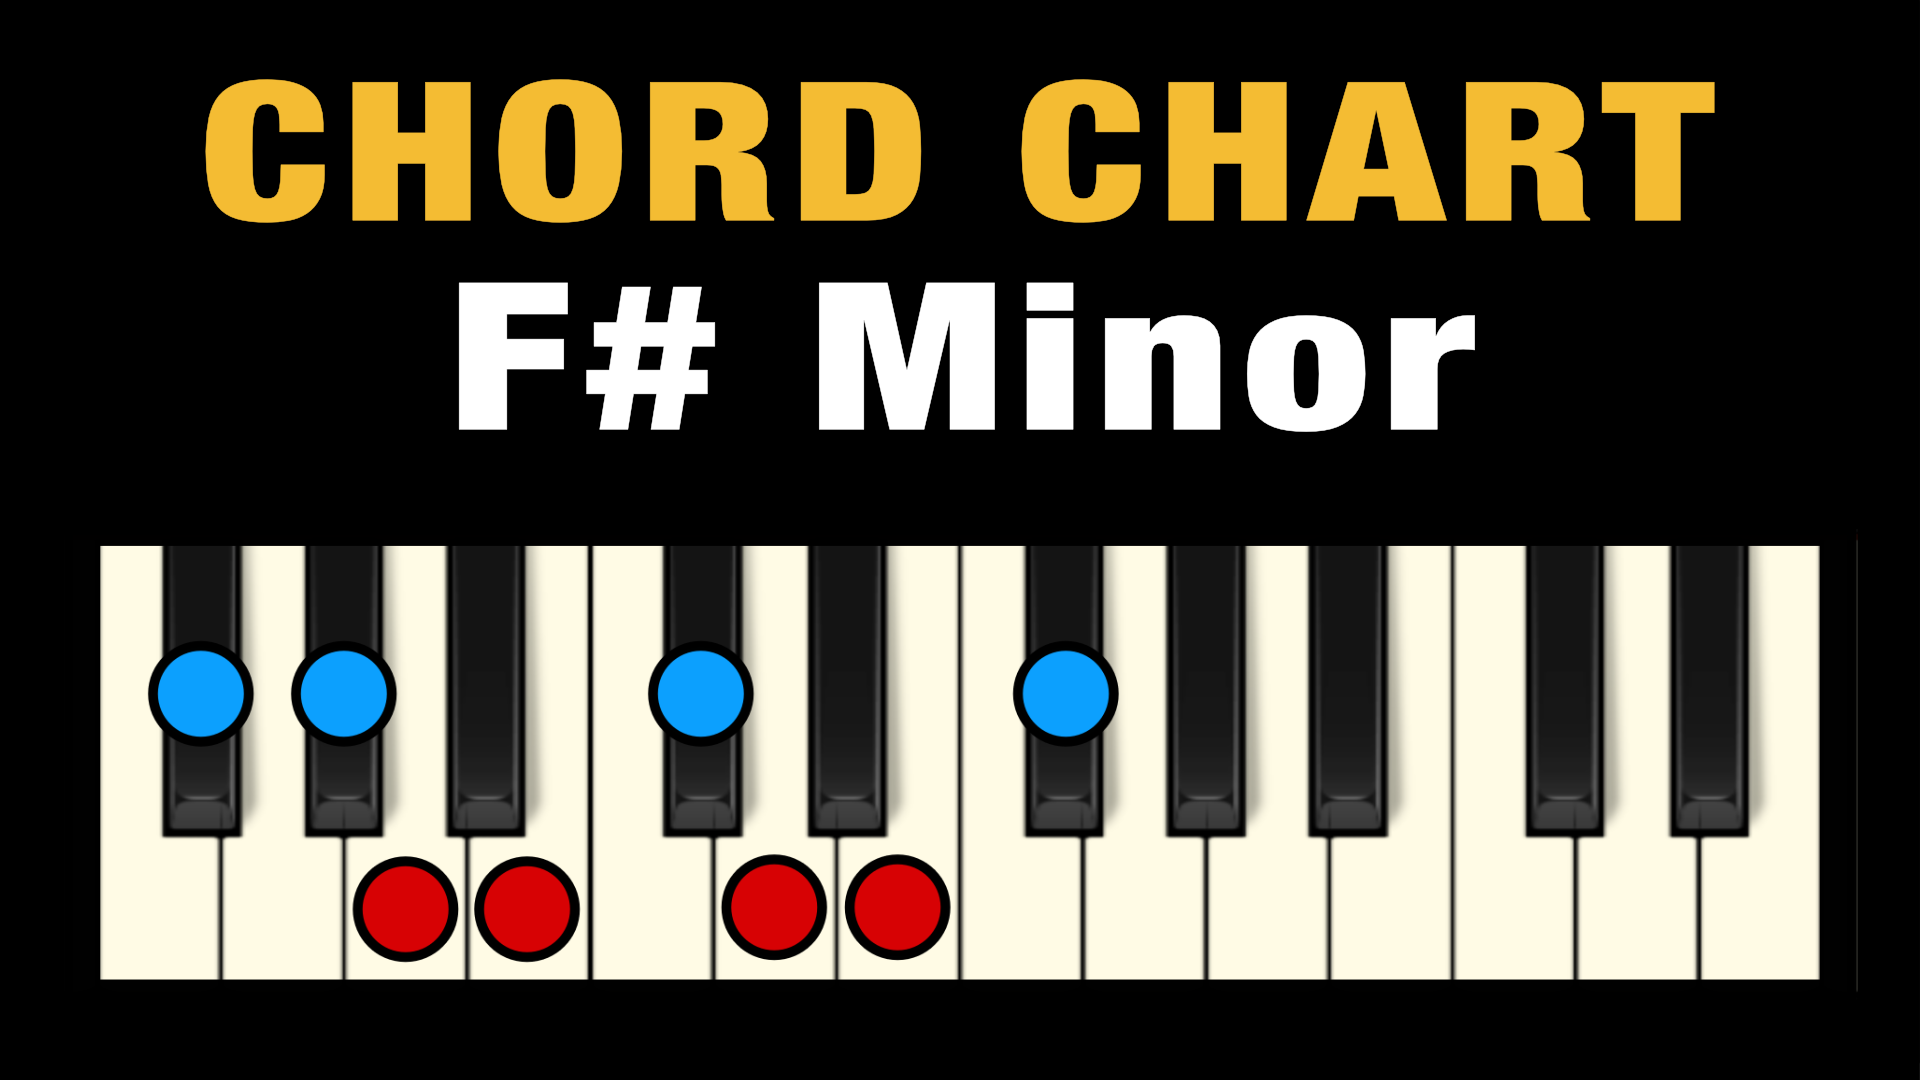 f sharp minor piano